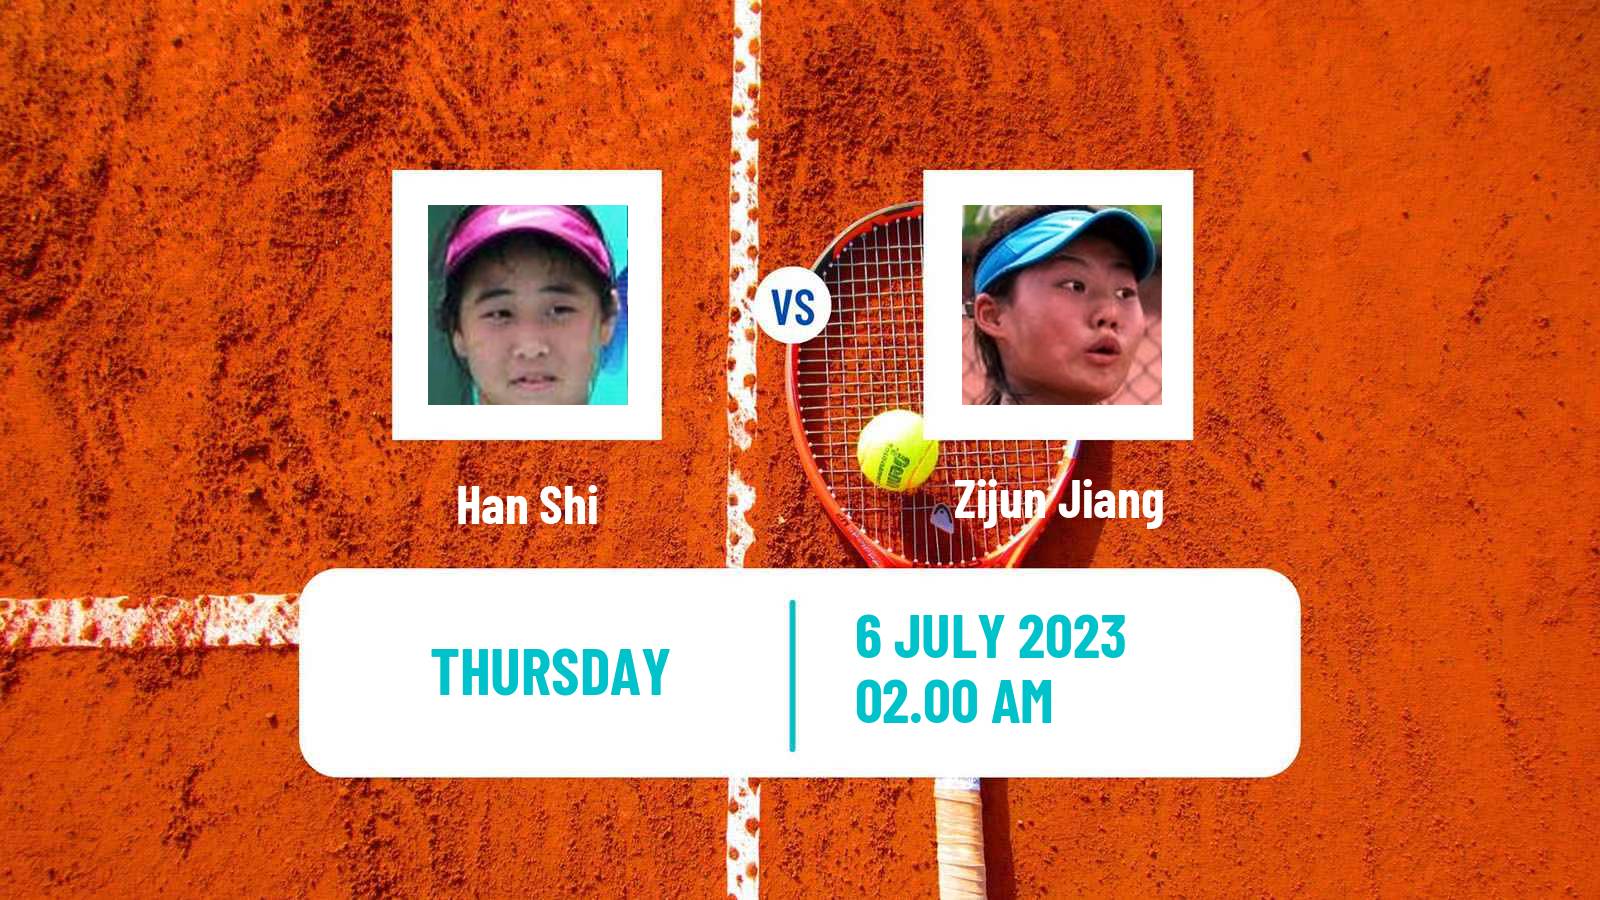 Tennis ITF W15 Tianjin 4 Women Han Shi - Zijun Jiang